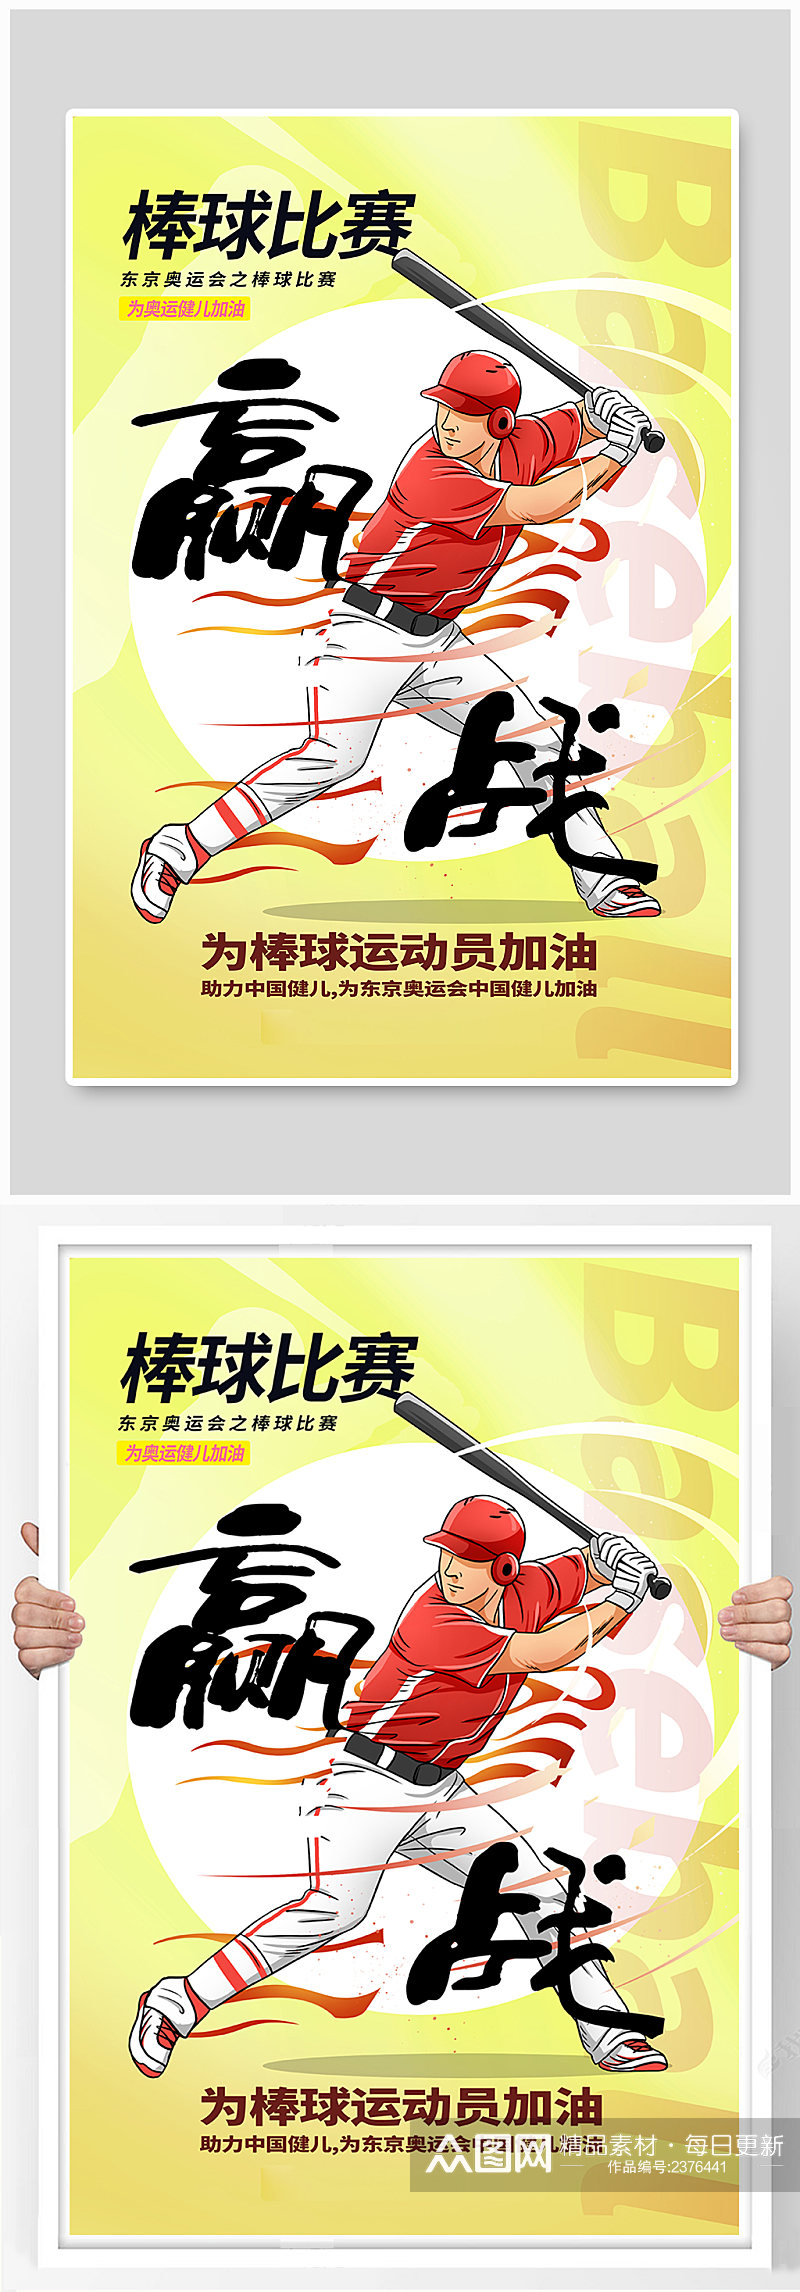 手绘风棒球比赛之东京奥运会海报素材